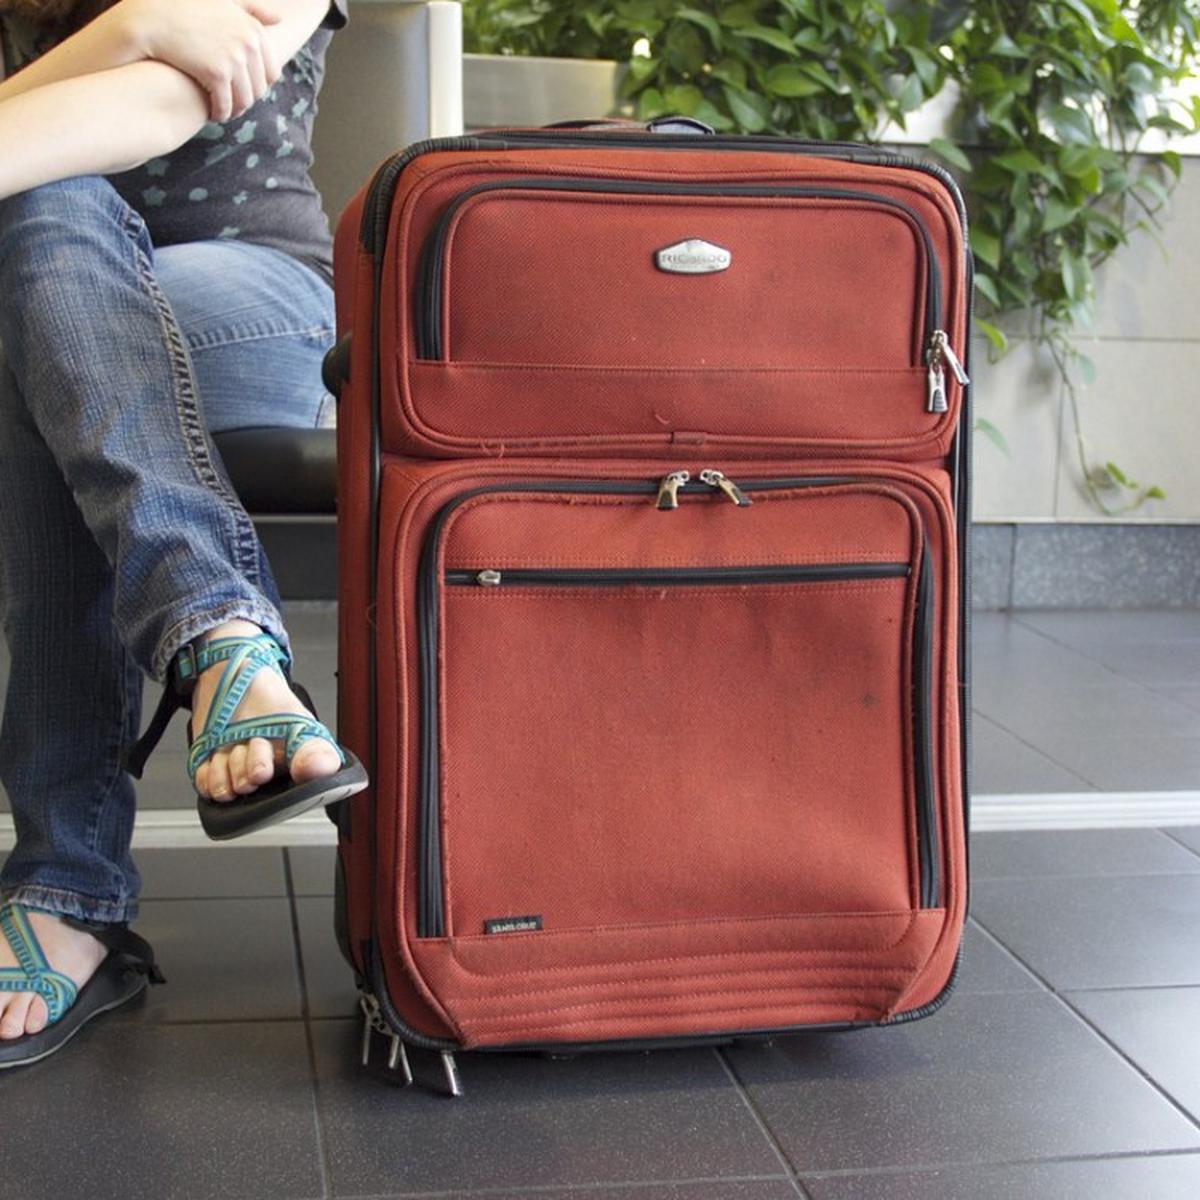 ≫ Cómo pesar una maleta de viaje 🥇 Las mejores básculas para maletas